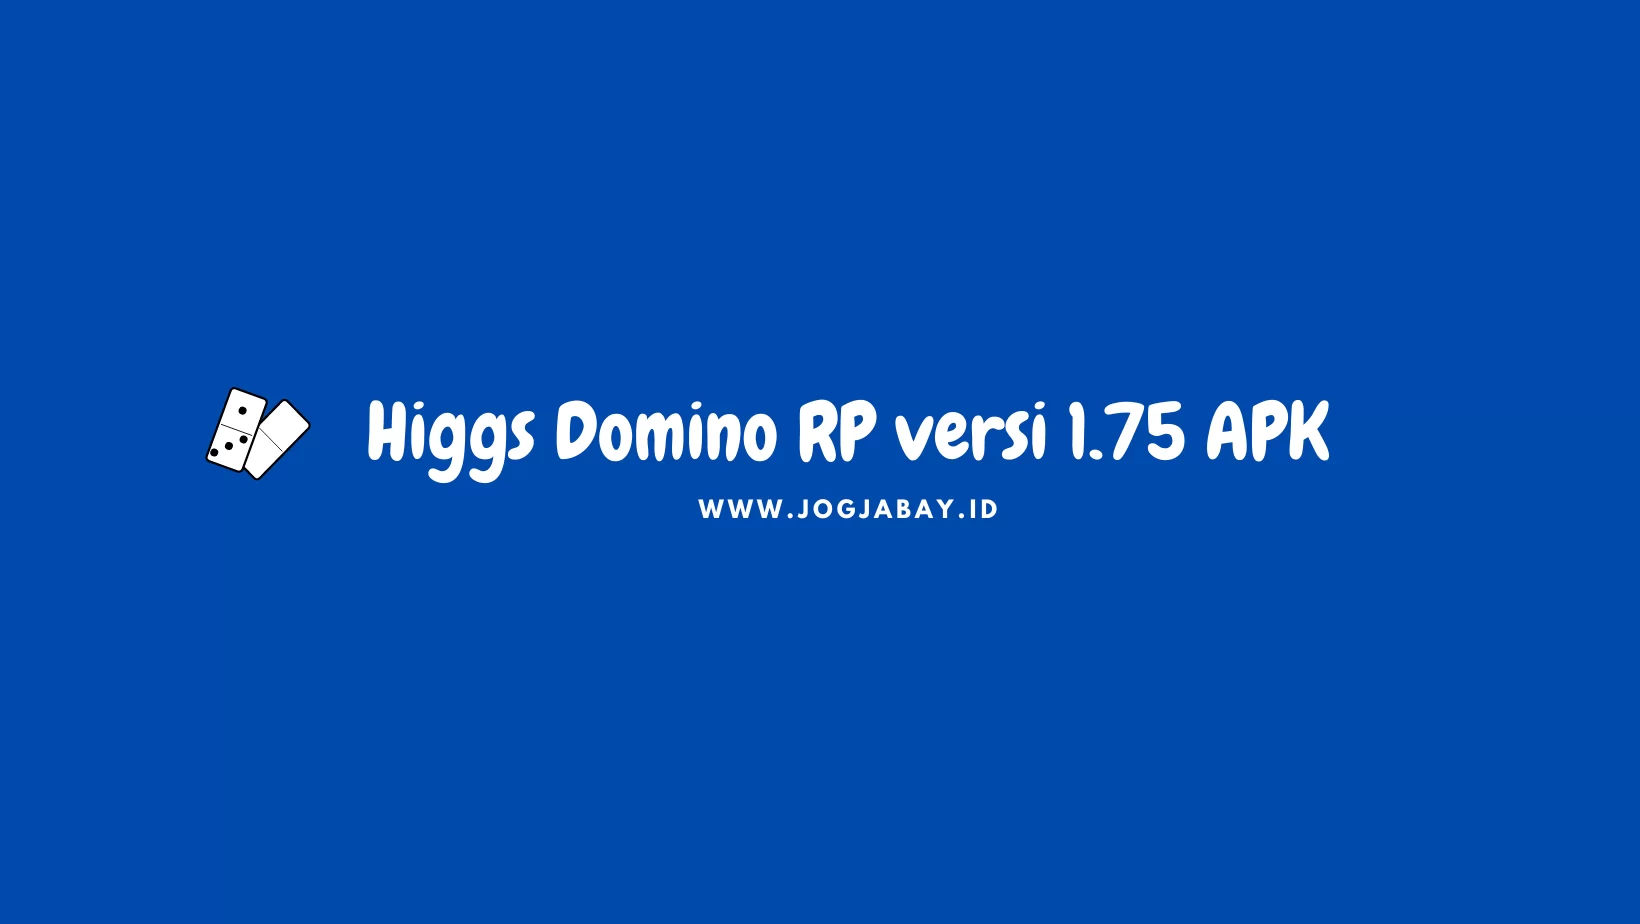 Higgs Domino RP versi 1.75 APK